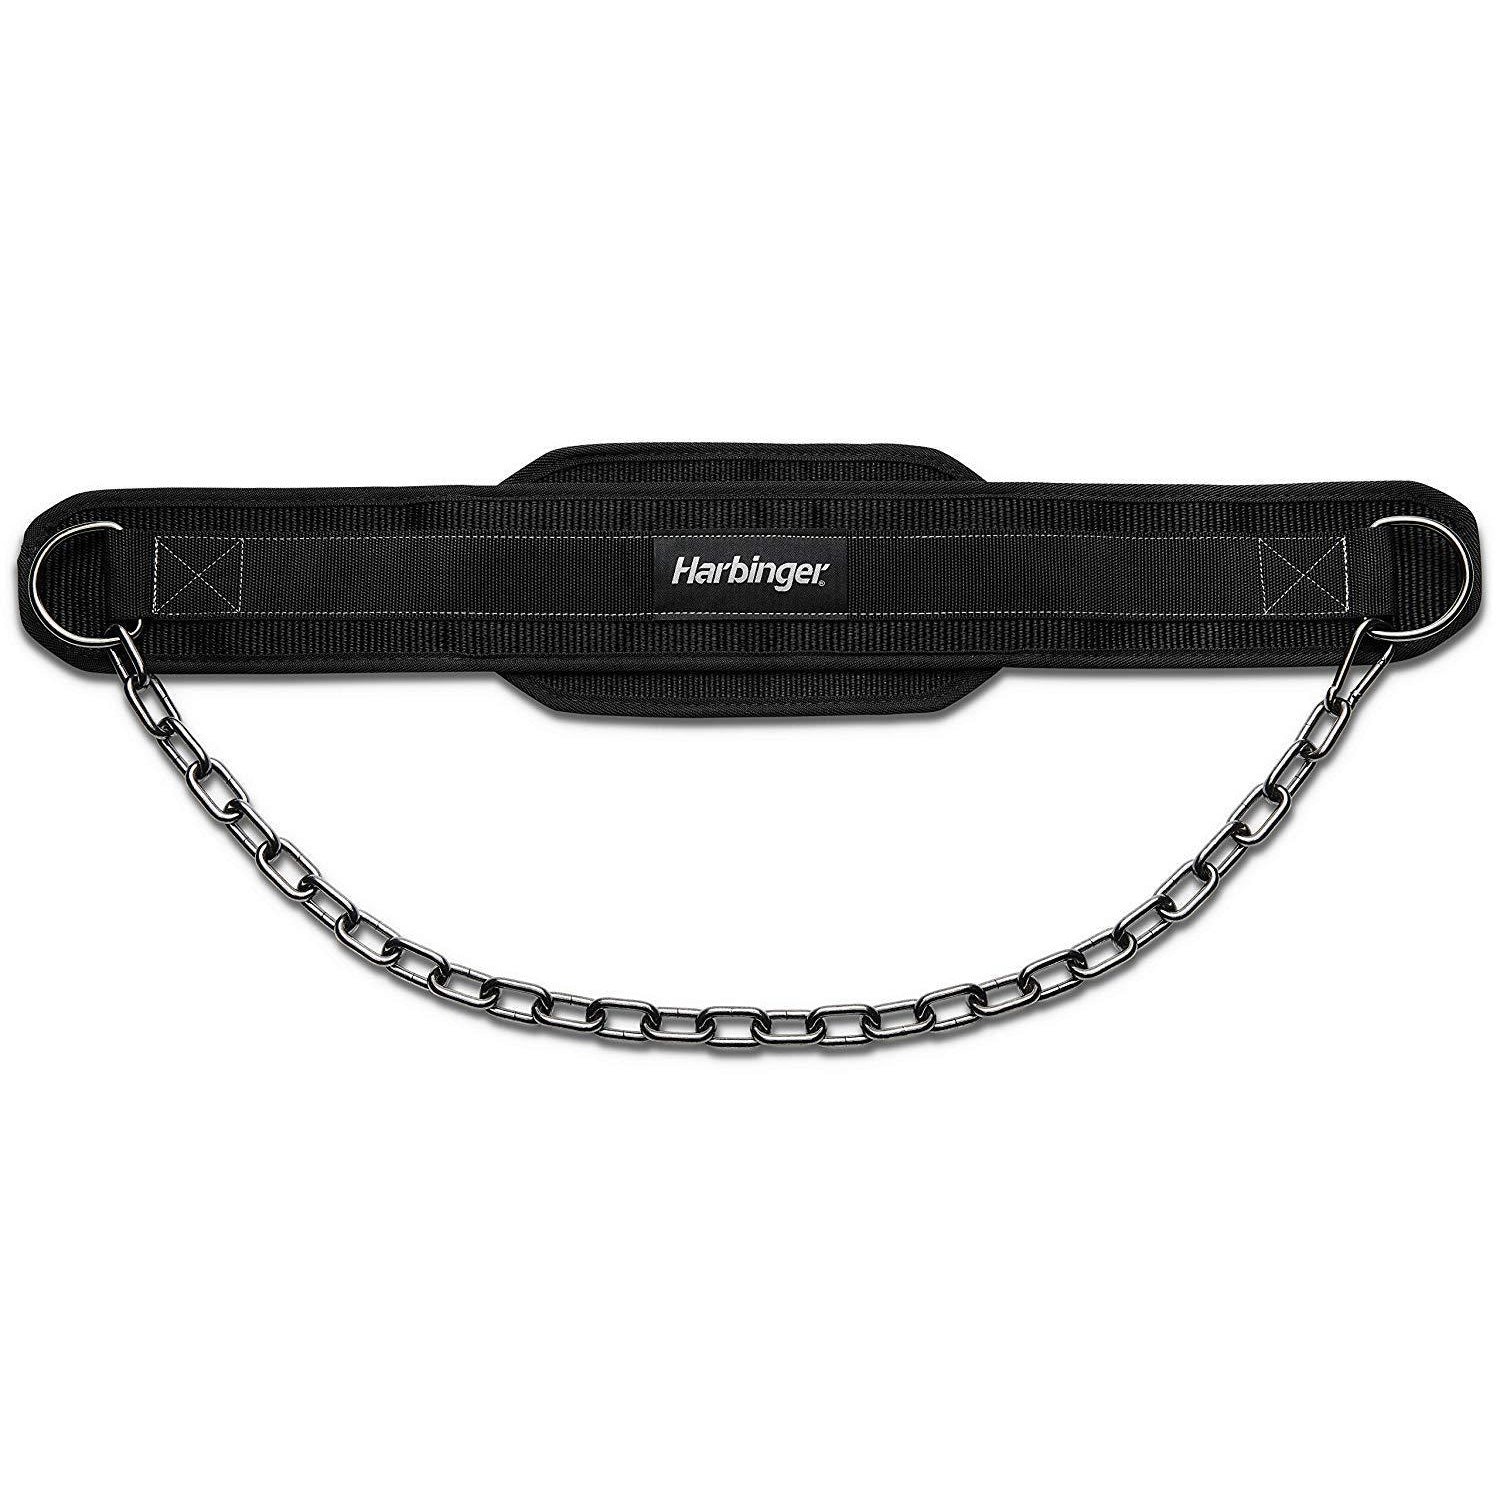 Polypro Dip Belt - Harbinger